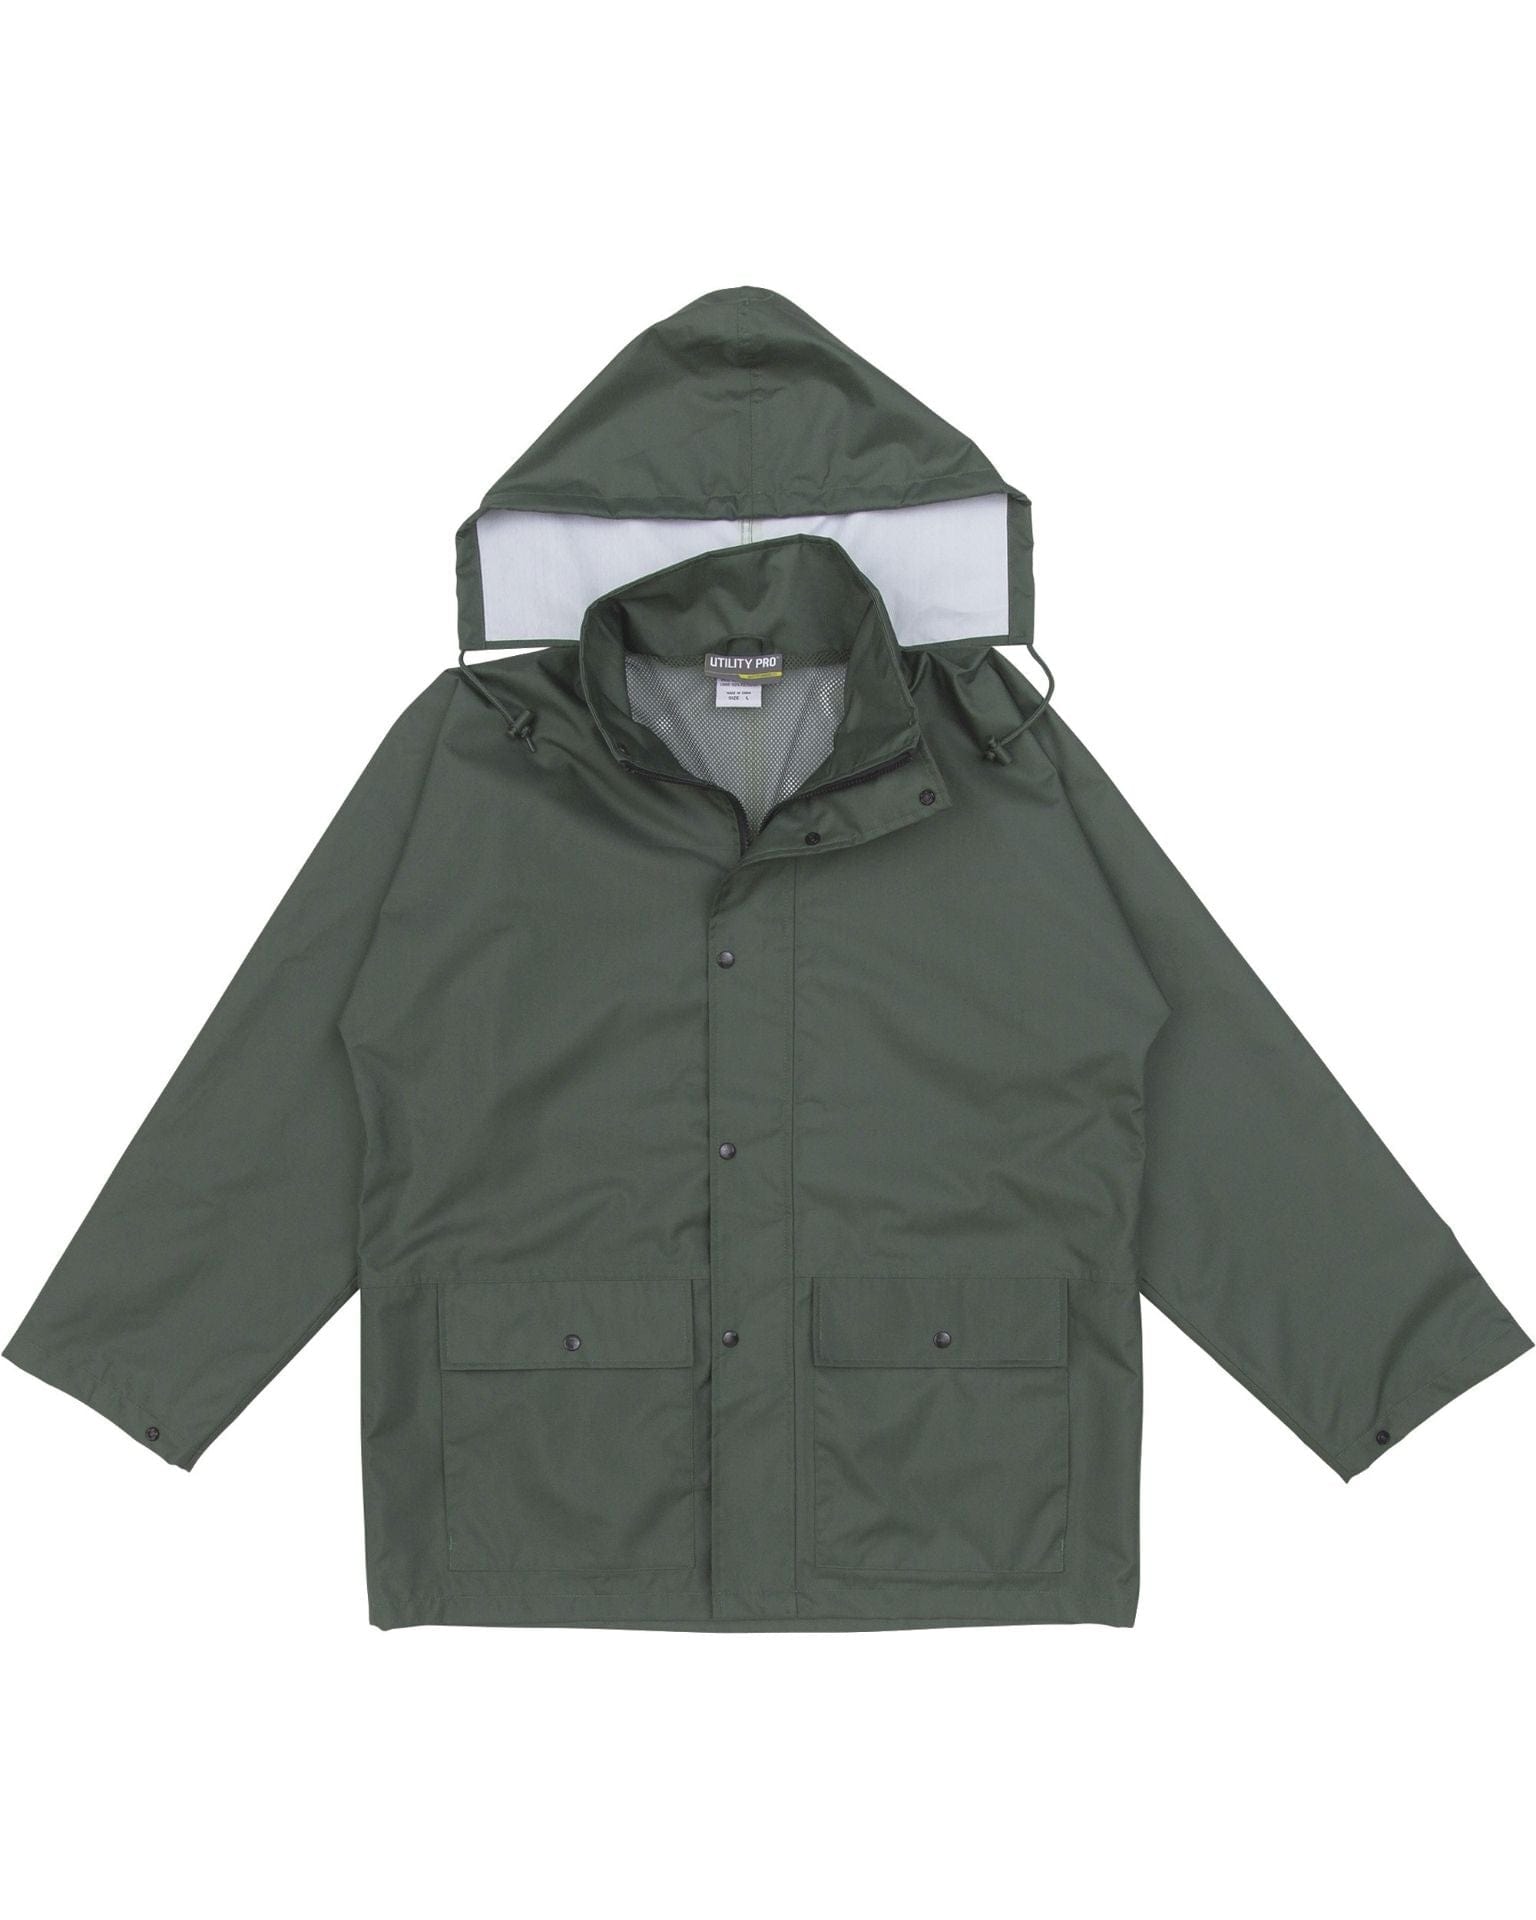 Utility Pro Wear Men's Rainwear UPA892 Men's Rain Jacket - Hunter Green